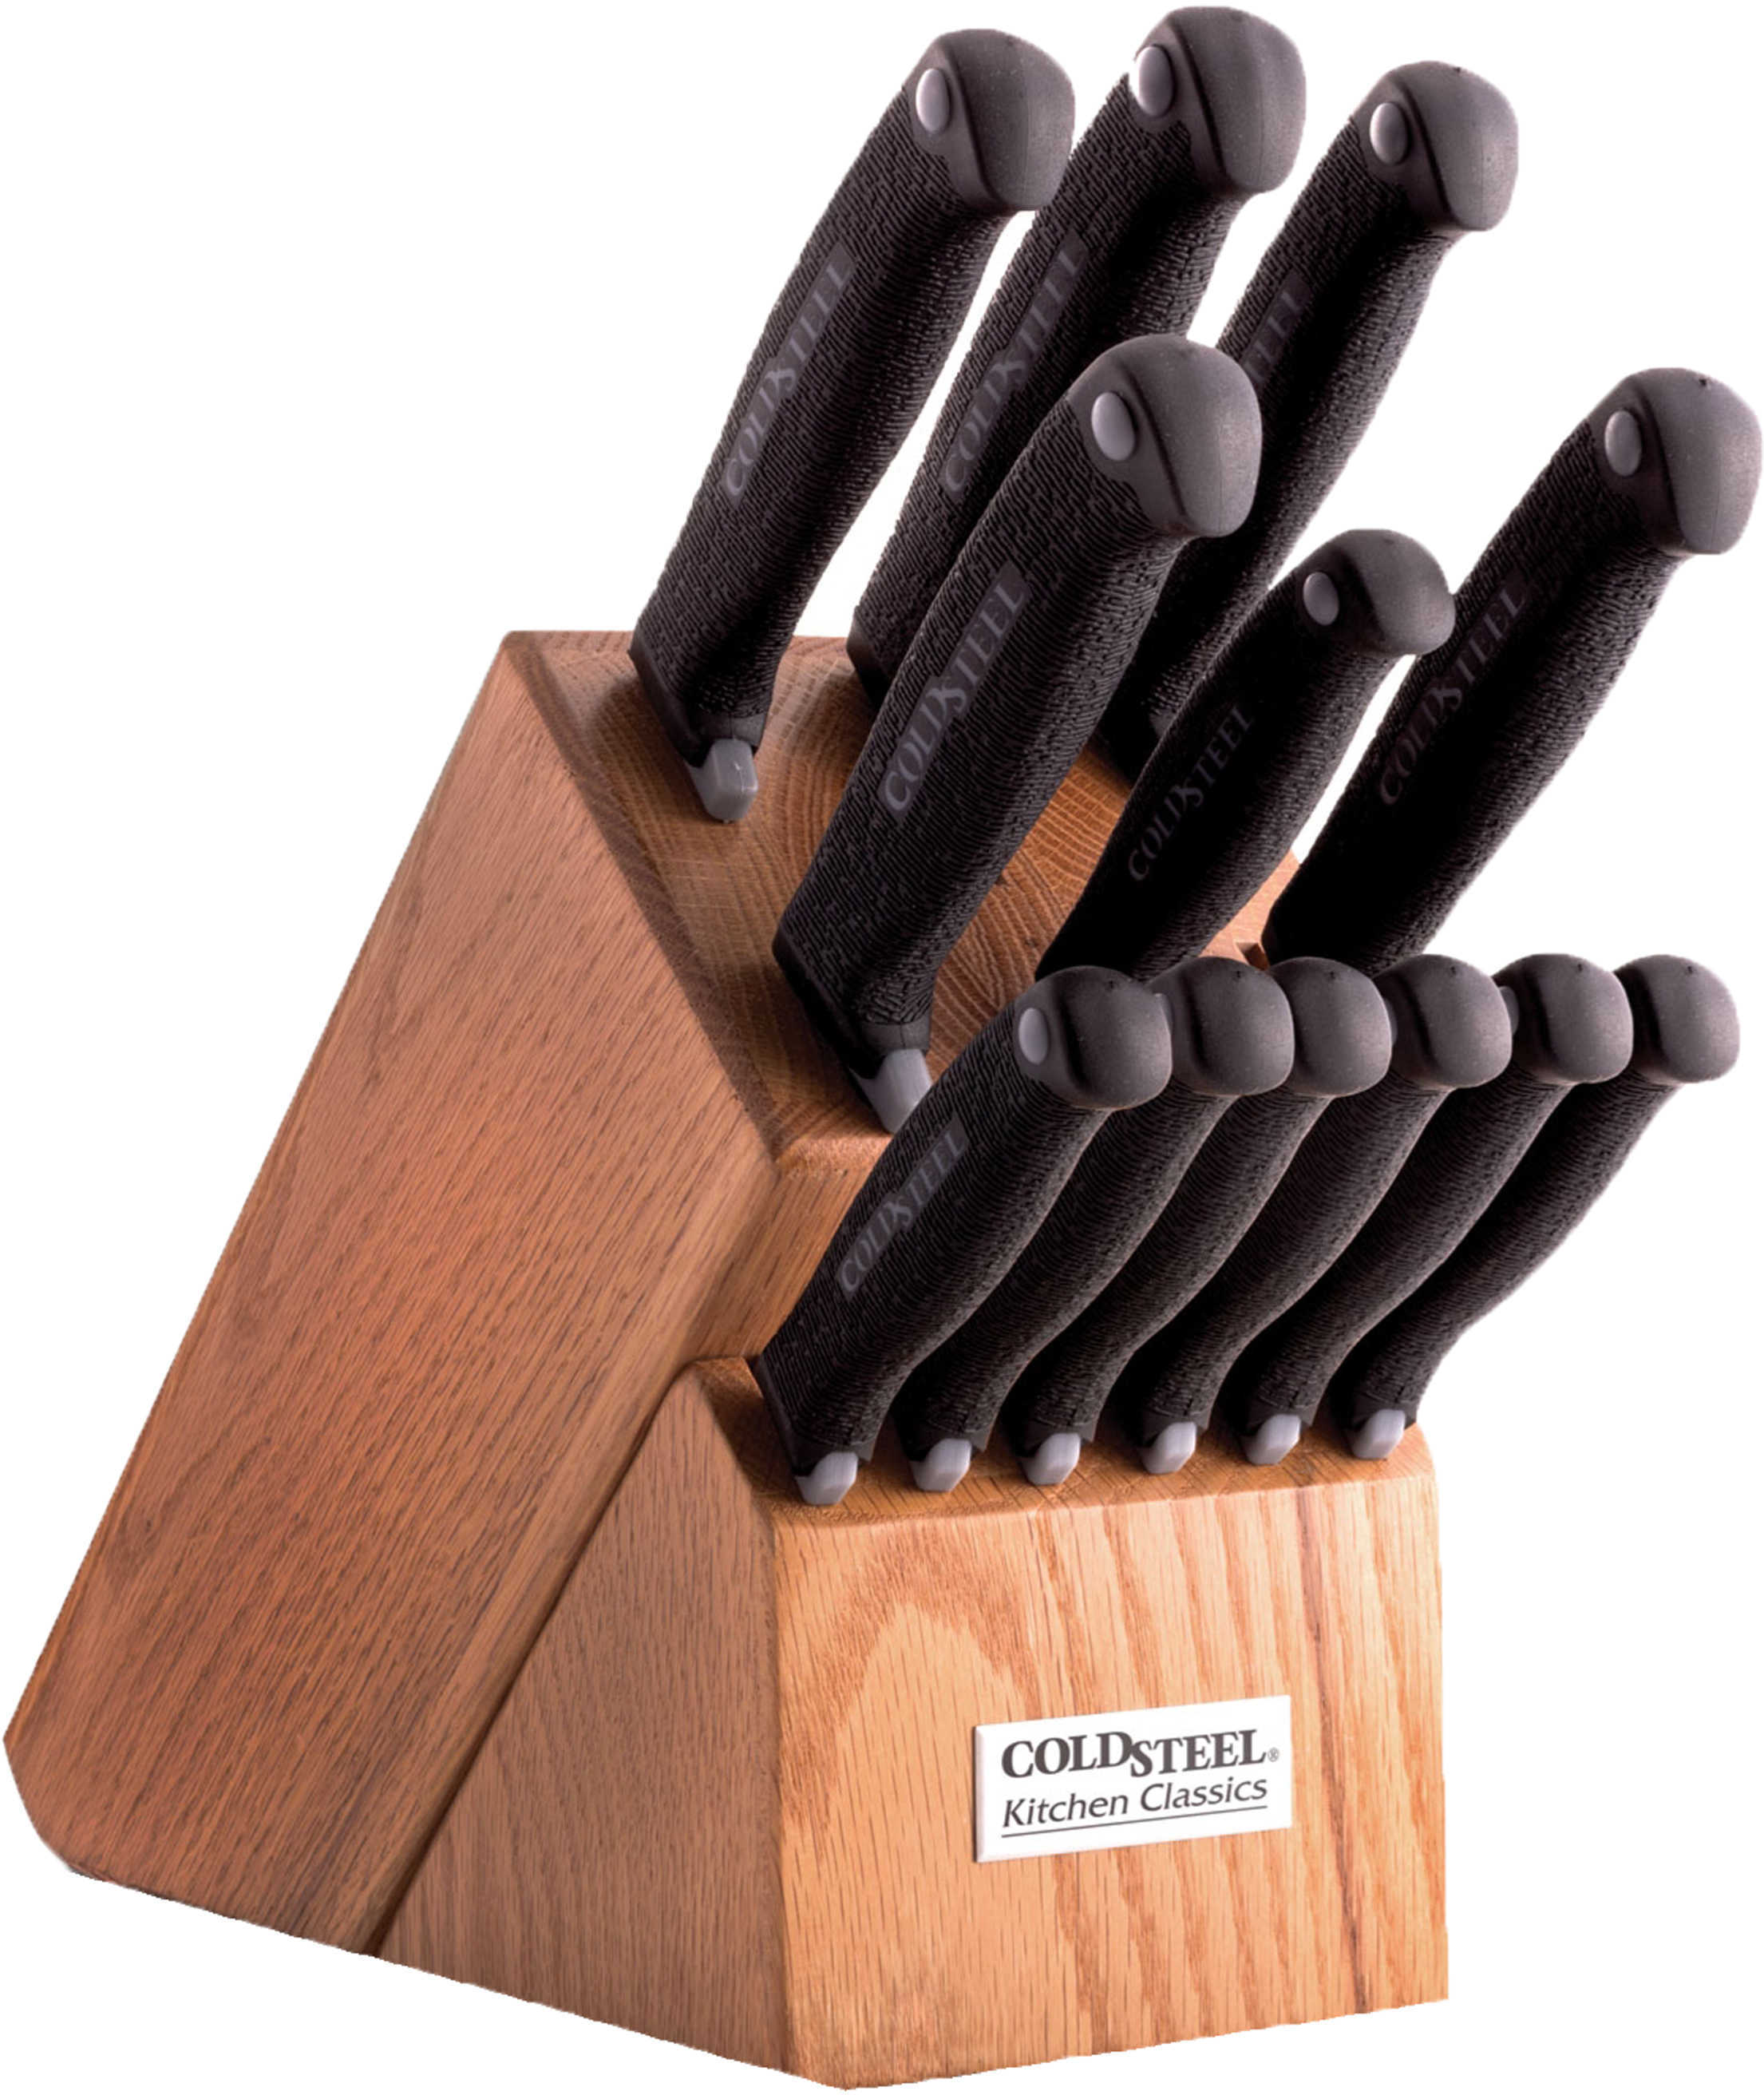 Cold Steel Kitchen Classics Set W/ Wood Block 13 Knives